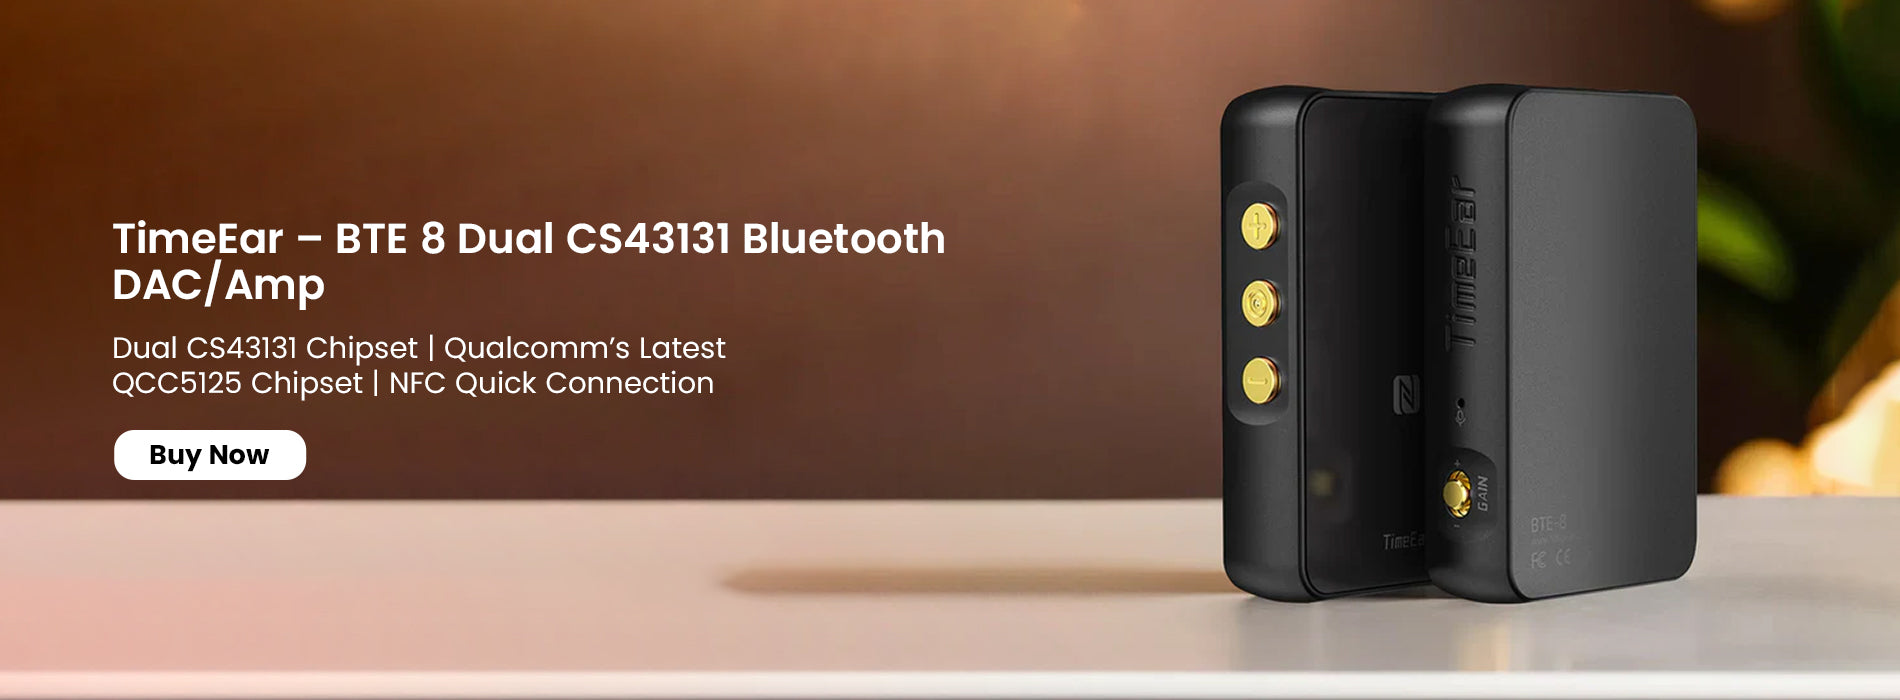 TimeEar BTE 8 Dual CS43131 Bluetooth DAC/Amp